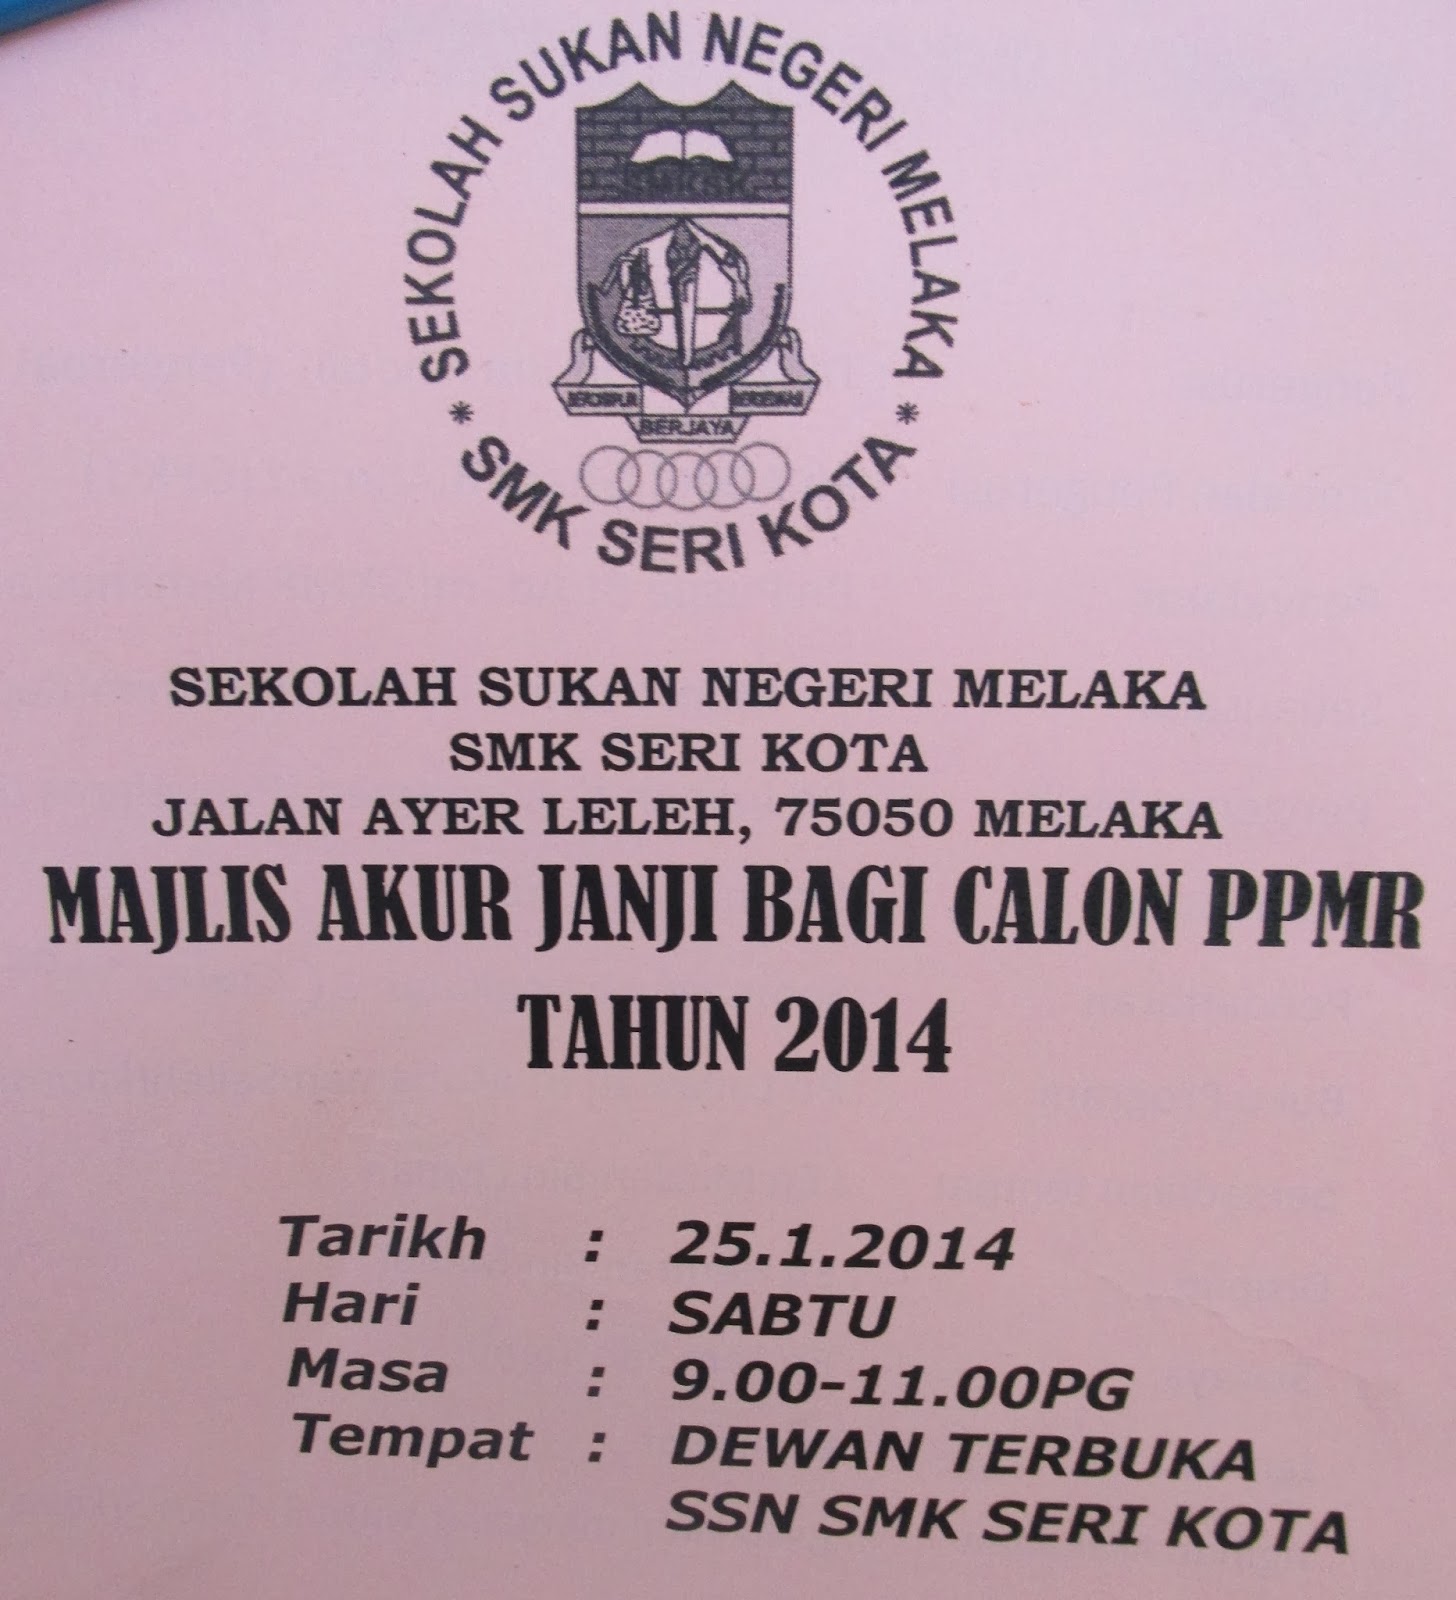 Sekolah Sukan Negeri SMK Seri Kota Melaka: January 2014